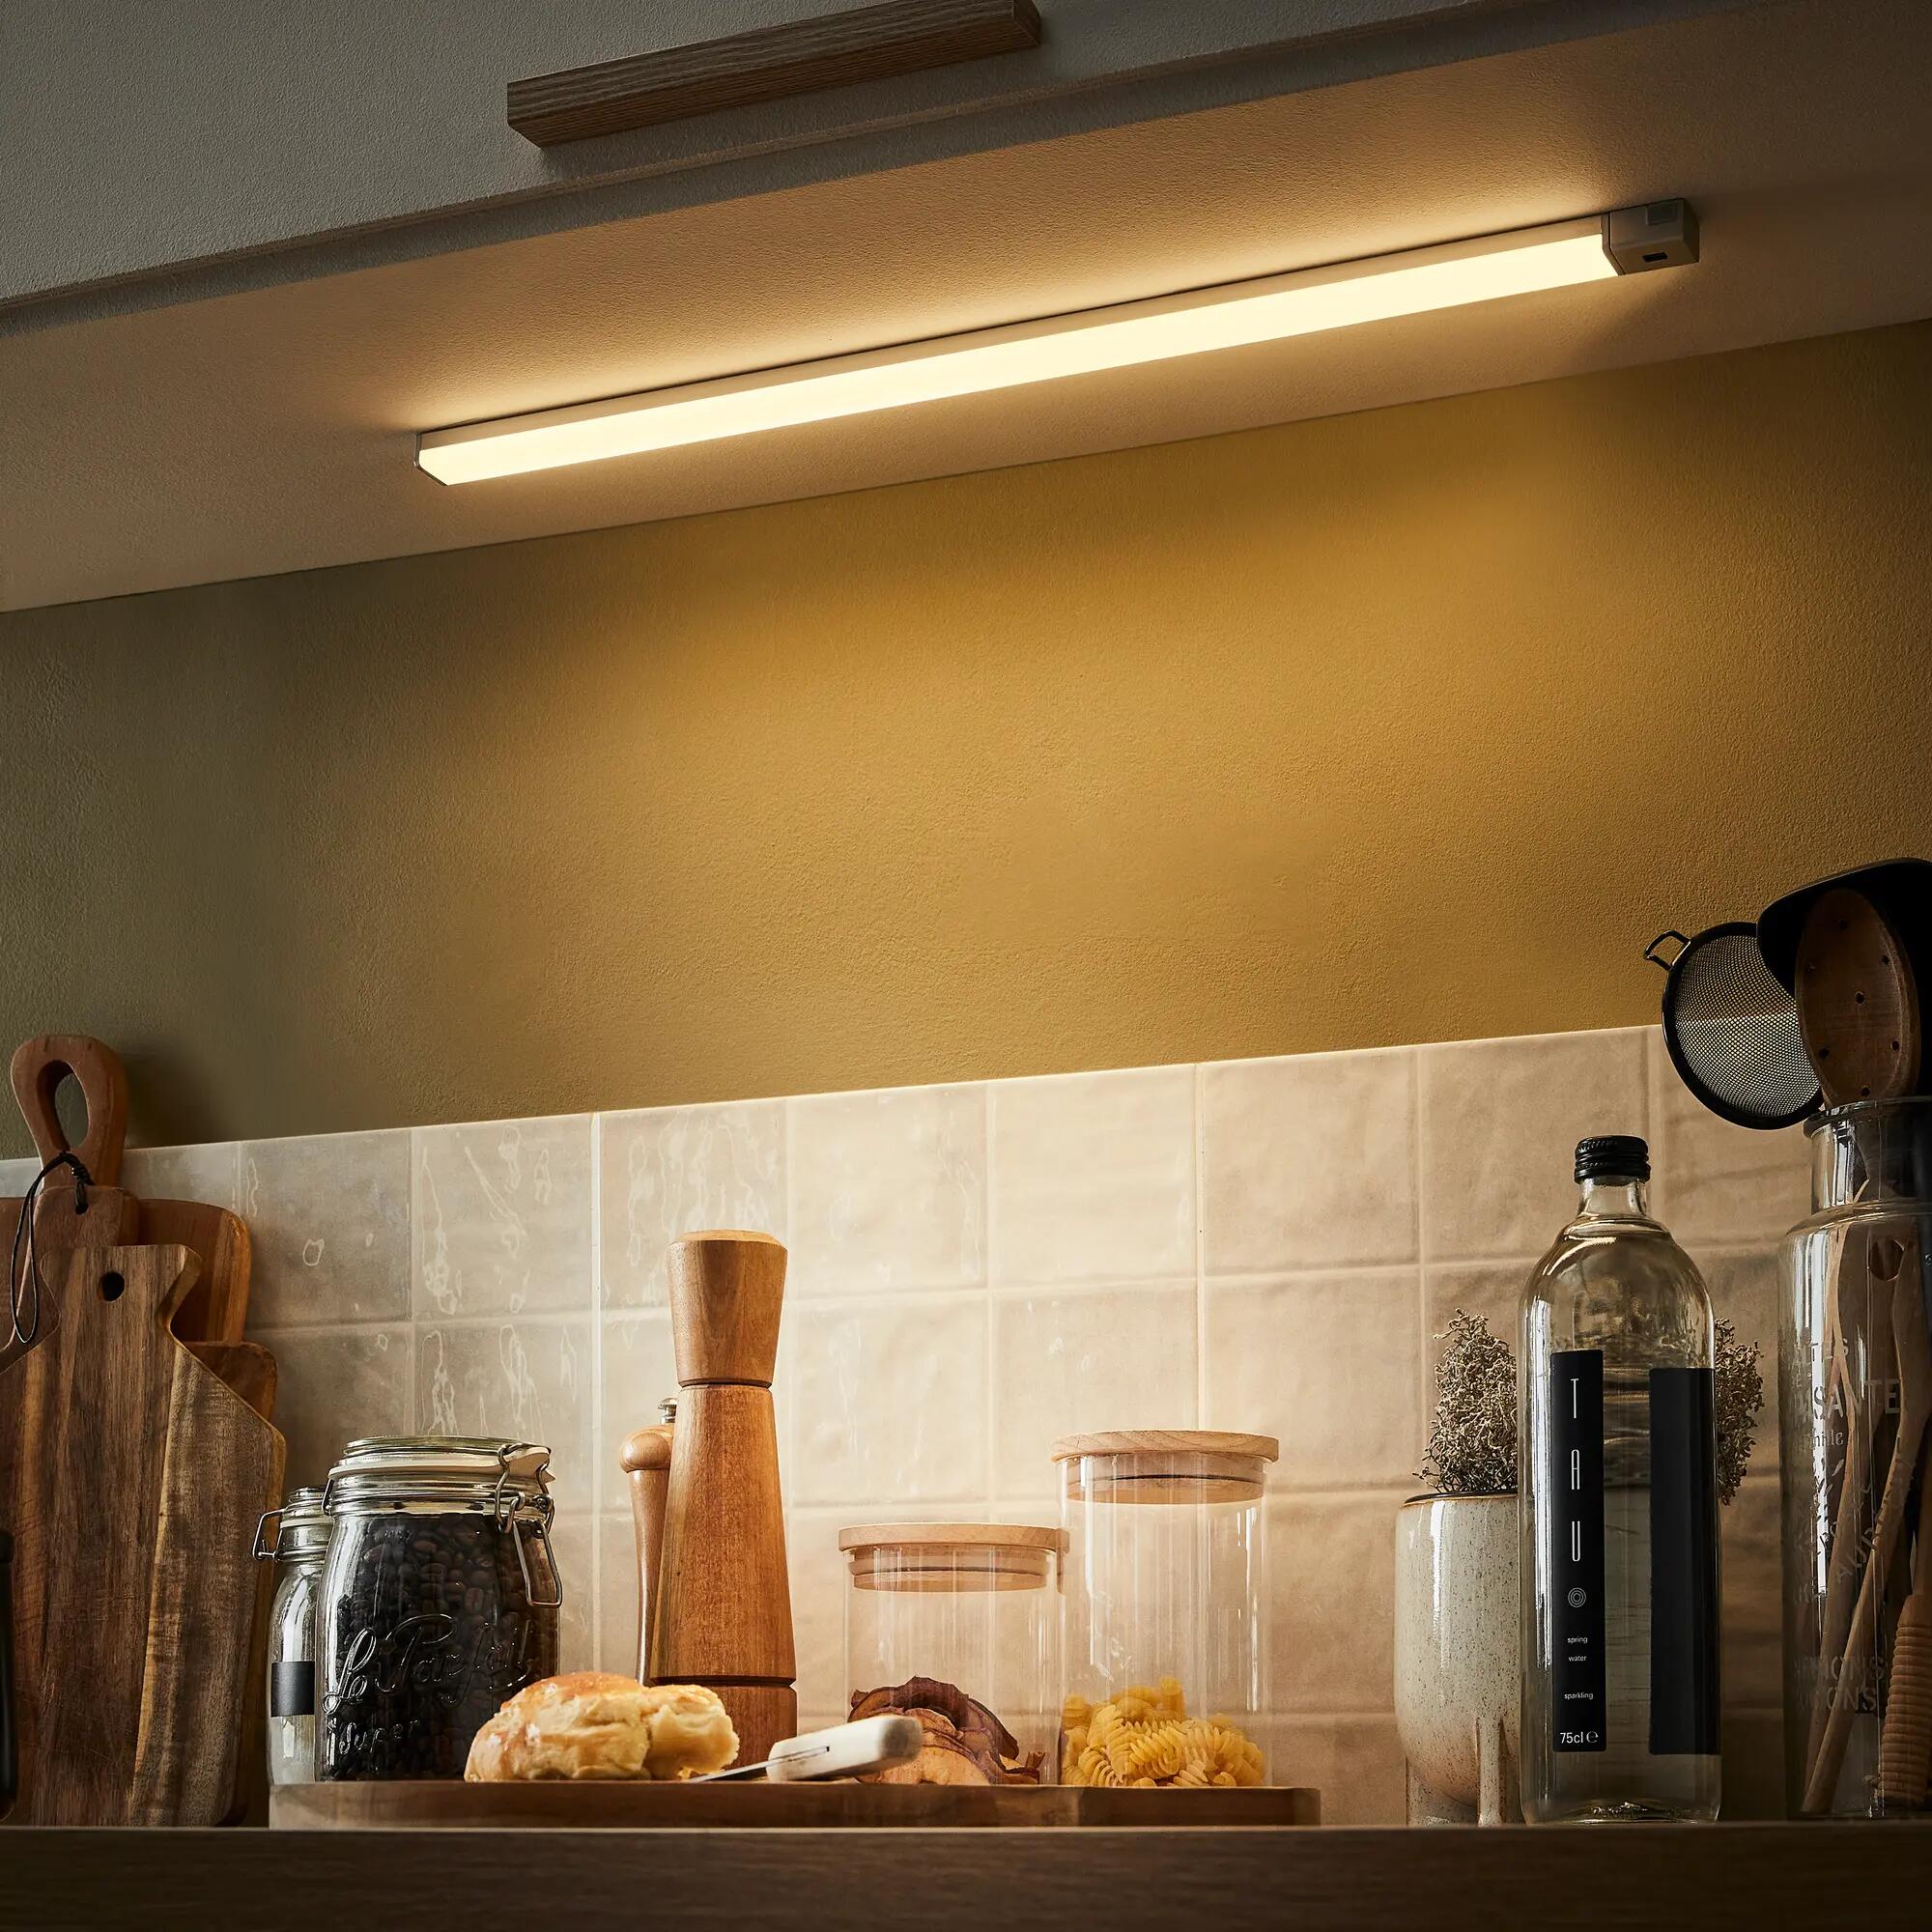 Réglette LED Cuisine 60cm I Lampe de Placard Avec Capteur de